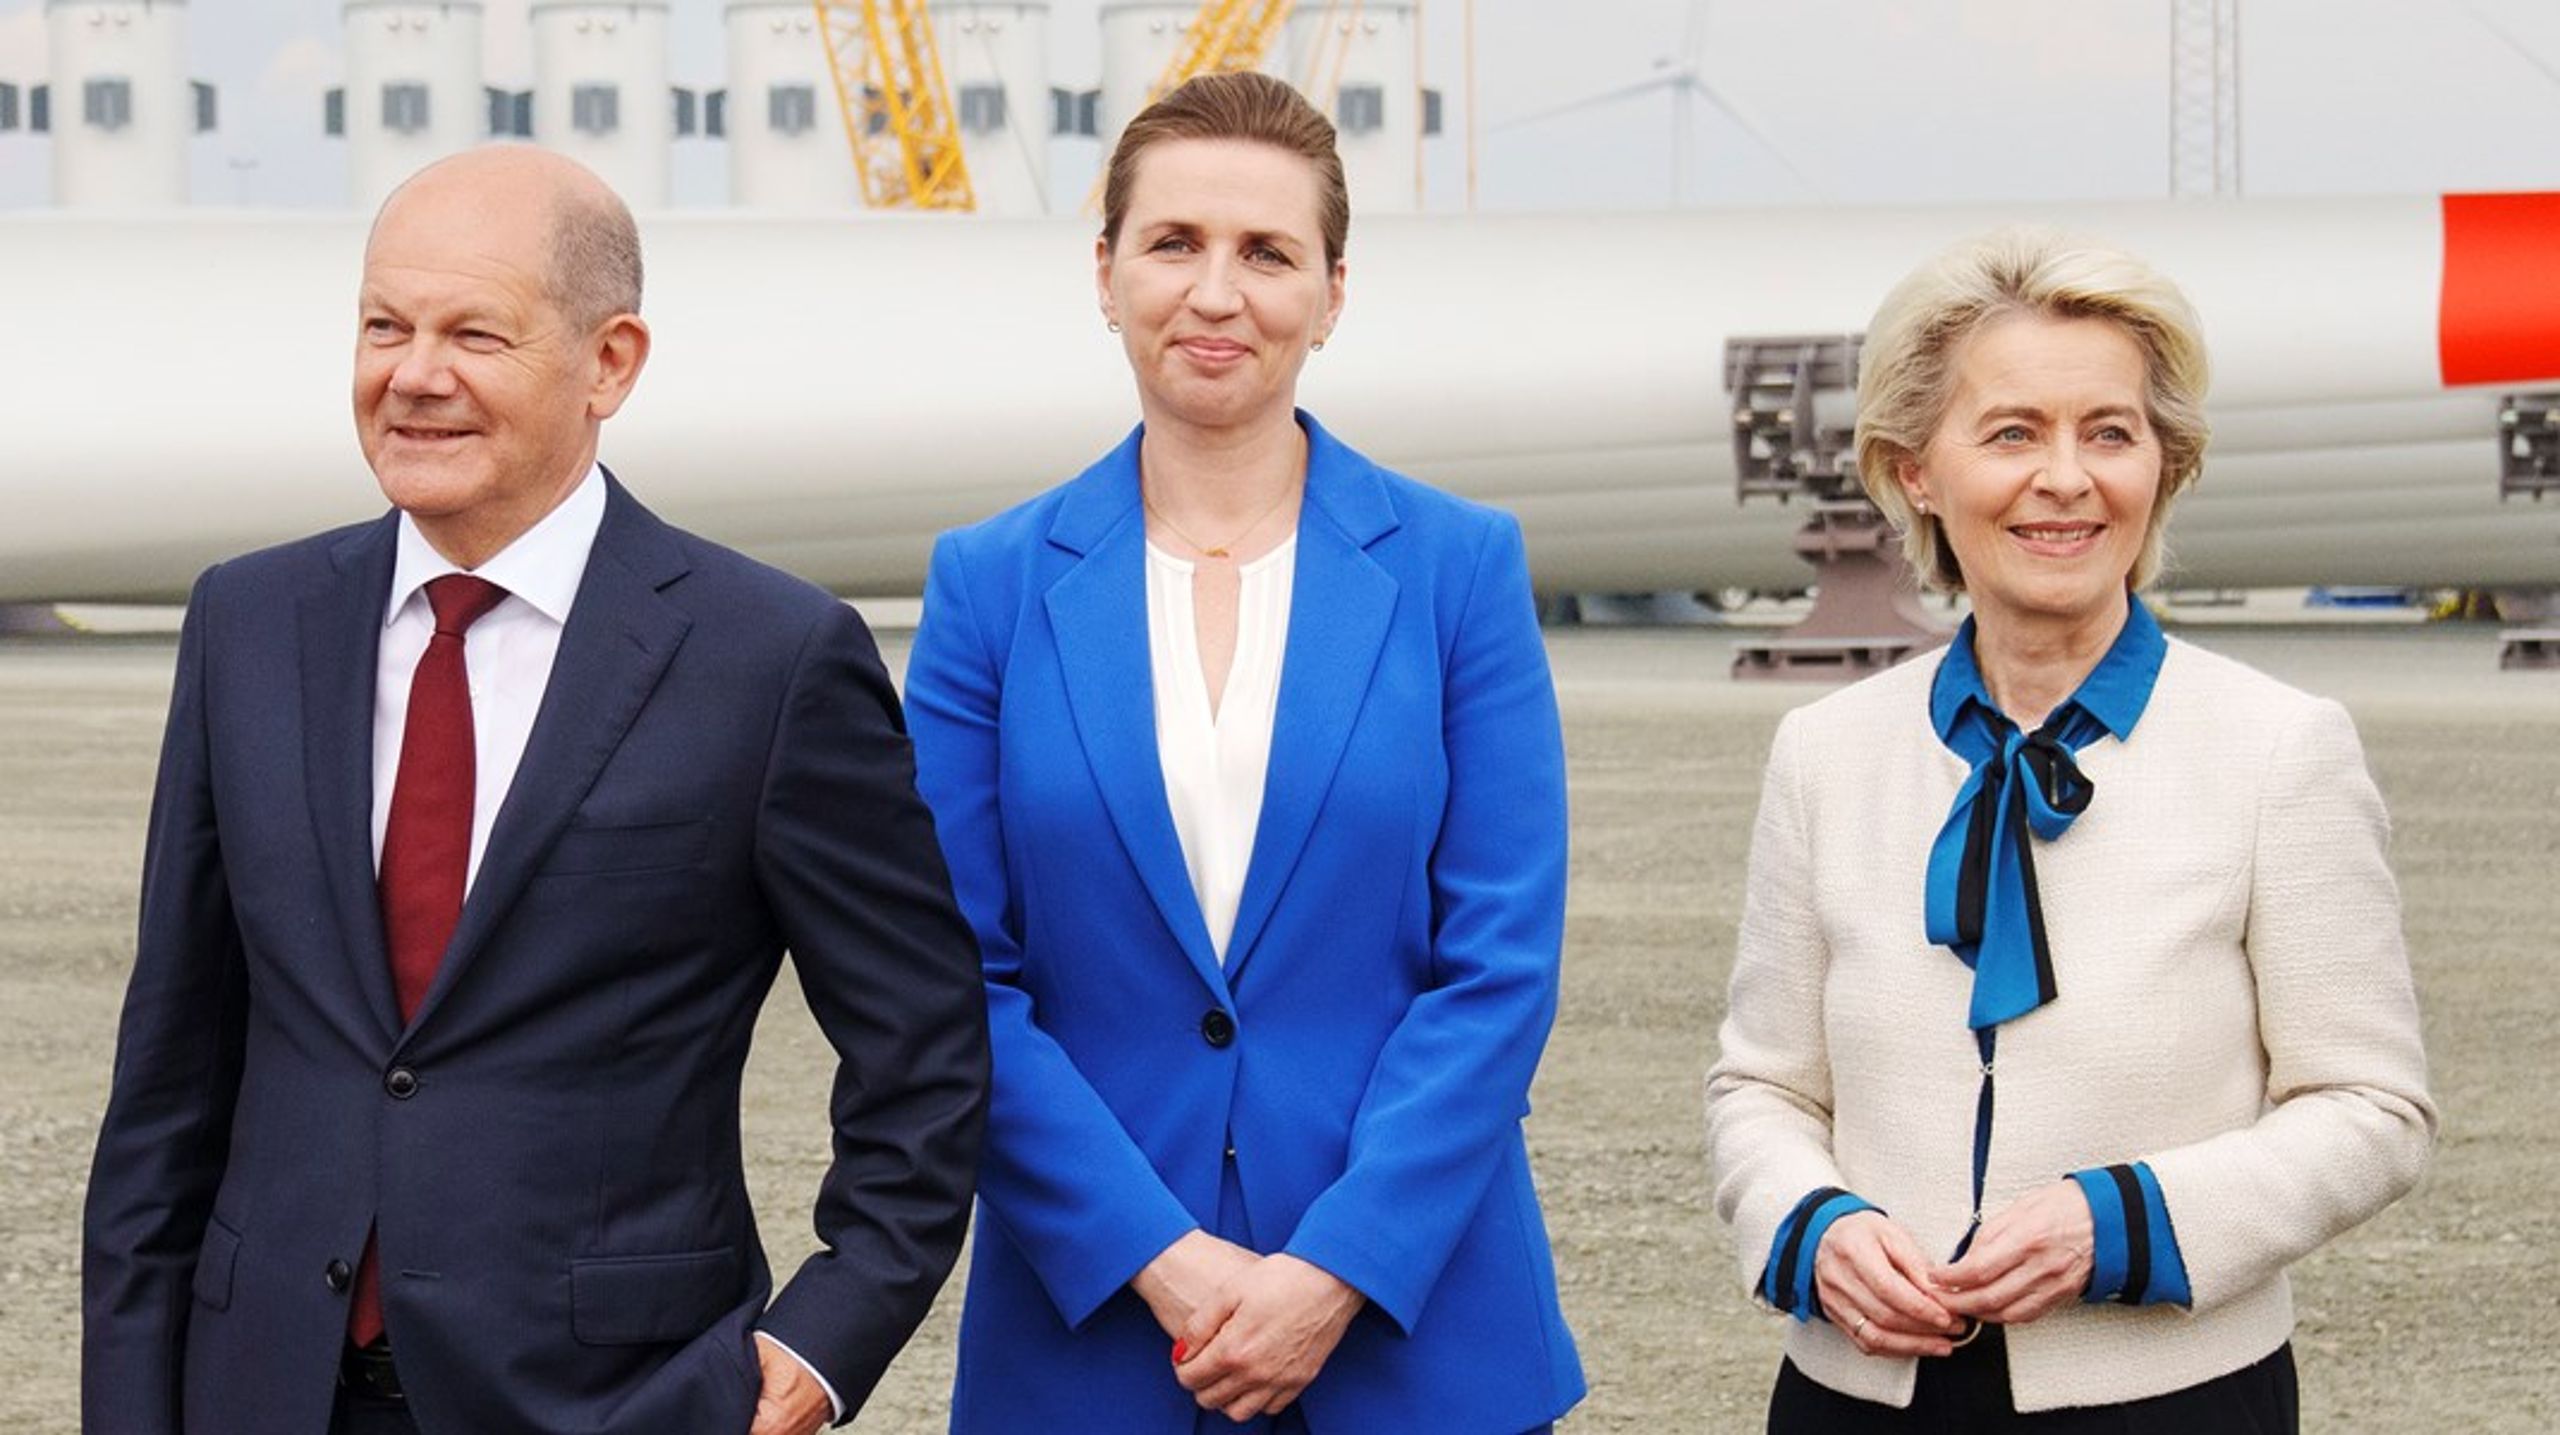 I foråret havde statsministeren også inviteret EU-Kommissionens formand,&nbsp;Ursula von der Leyen, og den tyske kansler, Olaf Scholz, til vindtopmøde i Esbjerg. Scholz har meldt afbud på Bornholm, men von der Leyen kommer.